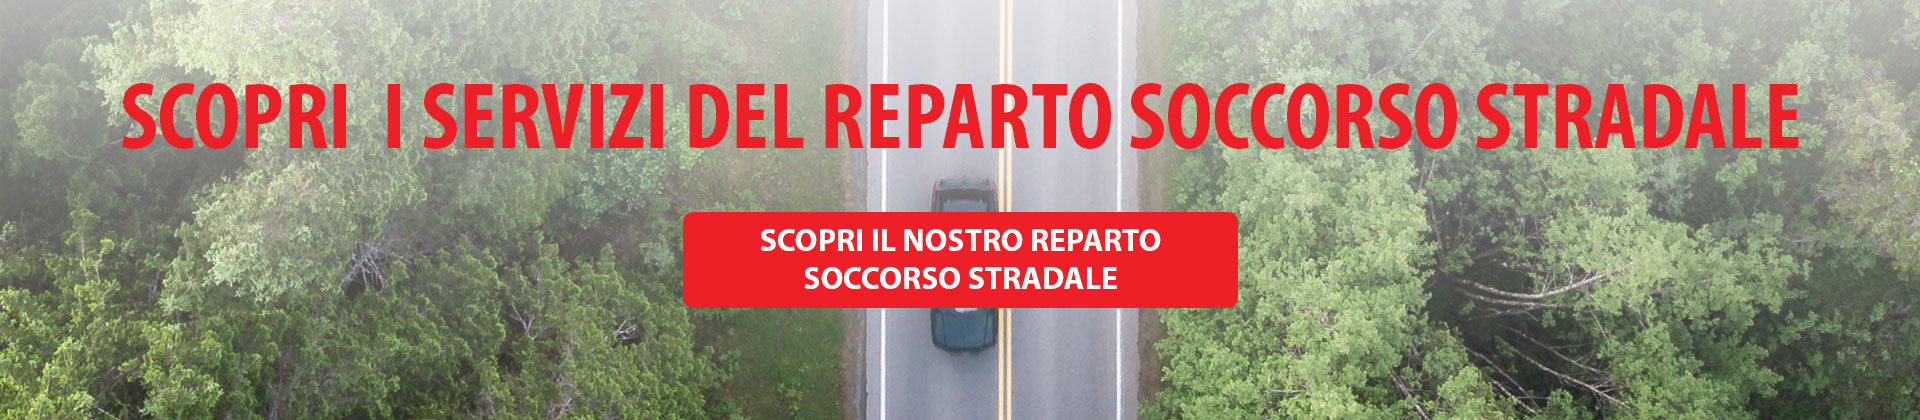 REPARTO-SOCCORSO-STRADALE